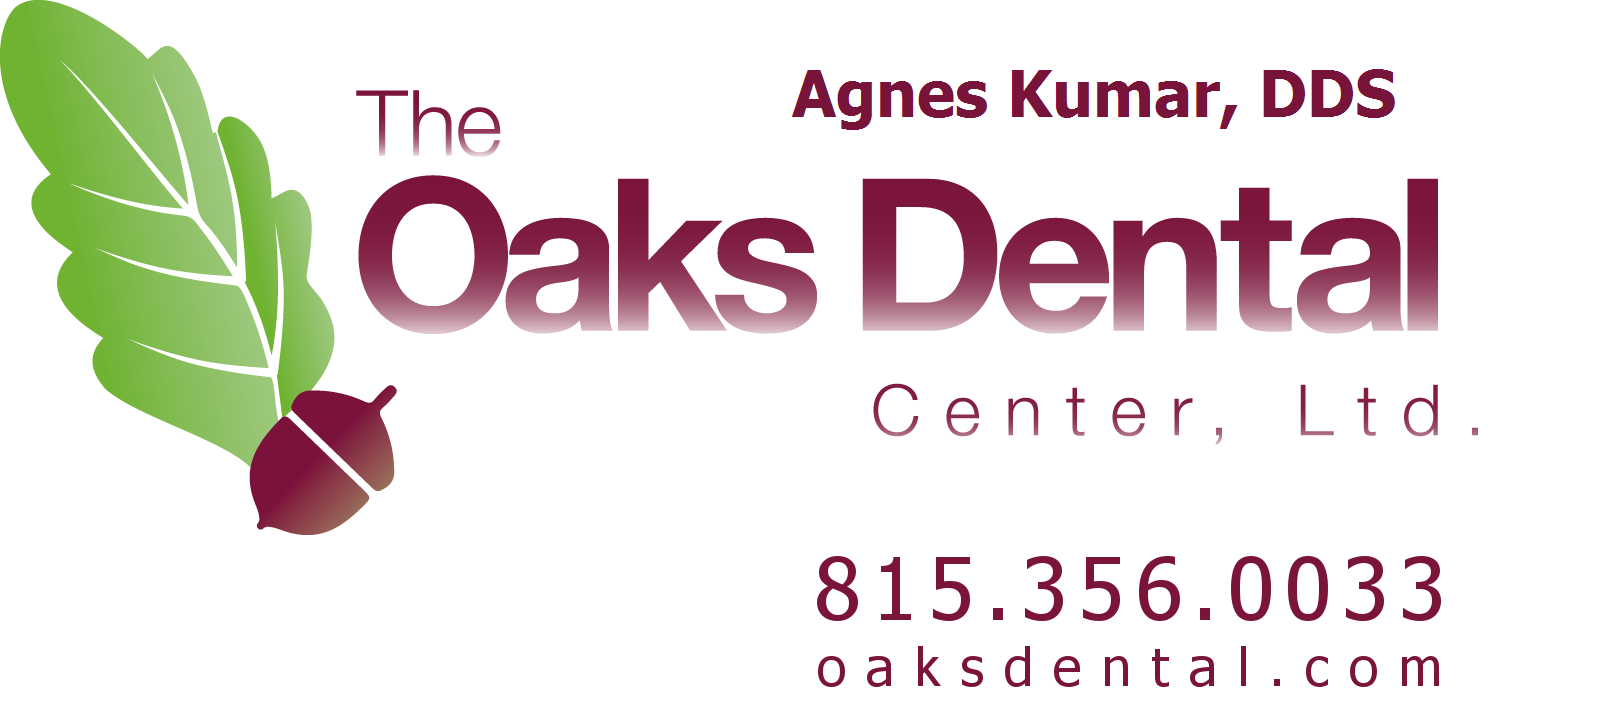 The Oaks Dental Center, Ltd. - Agnes Kumar, DDS